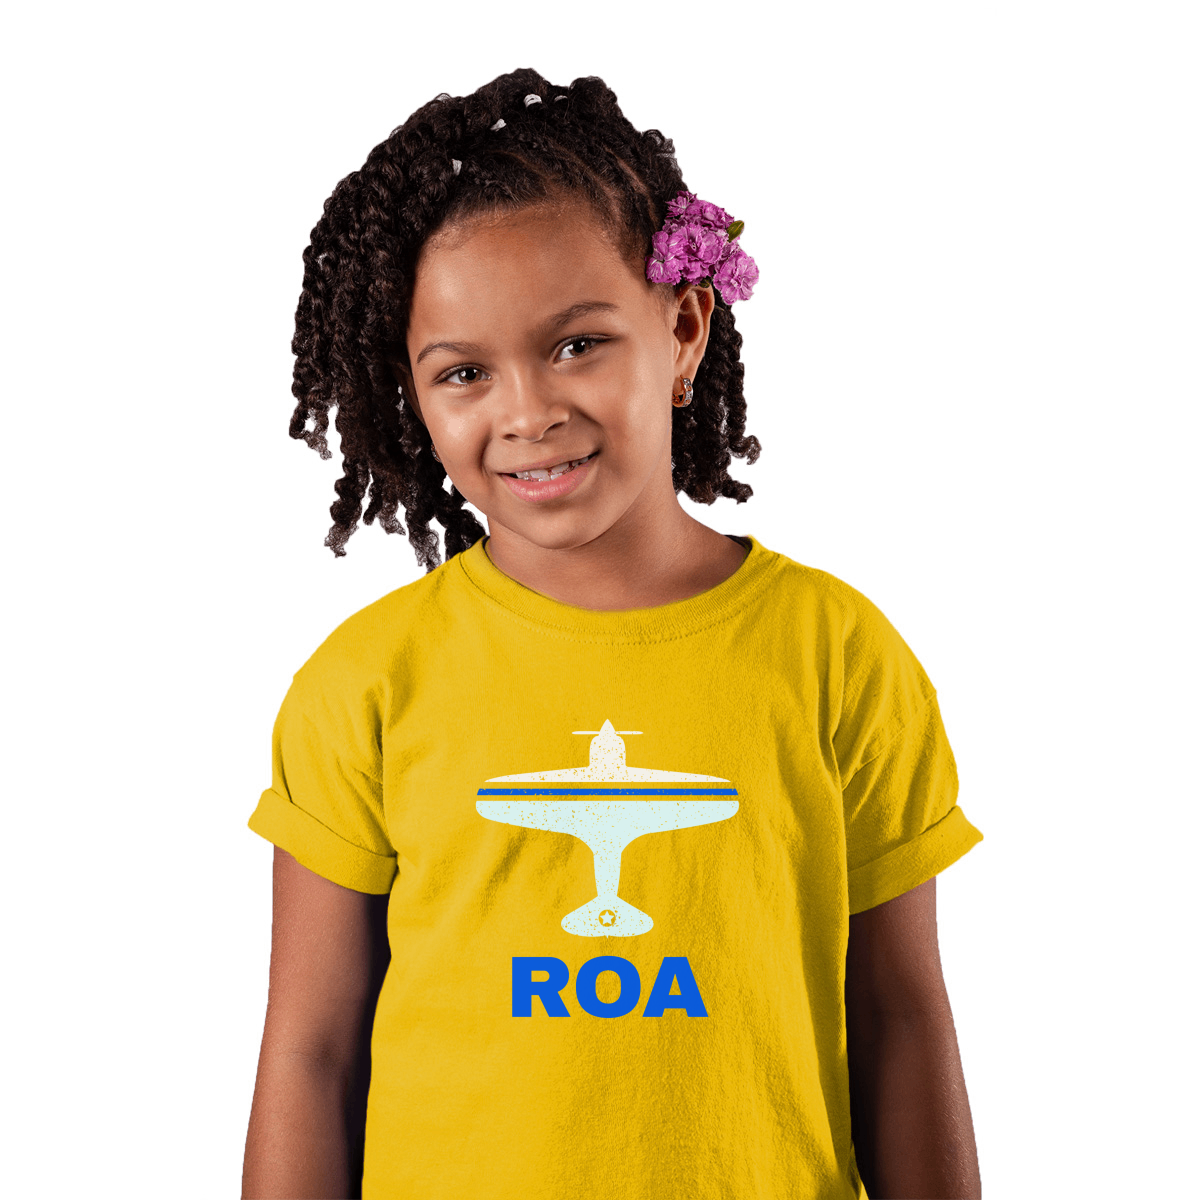 Fly Roanoke ROA Airport Kids T-shirt | Yellow